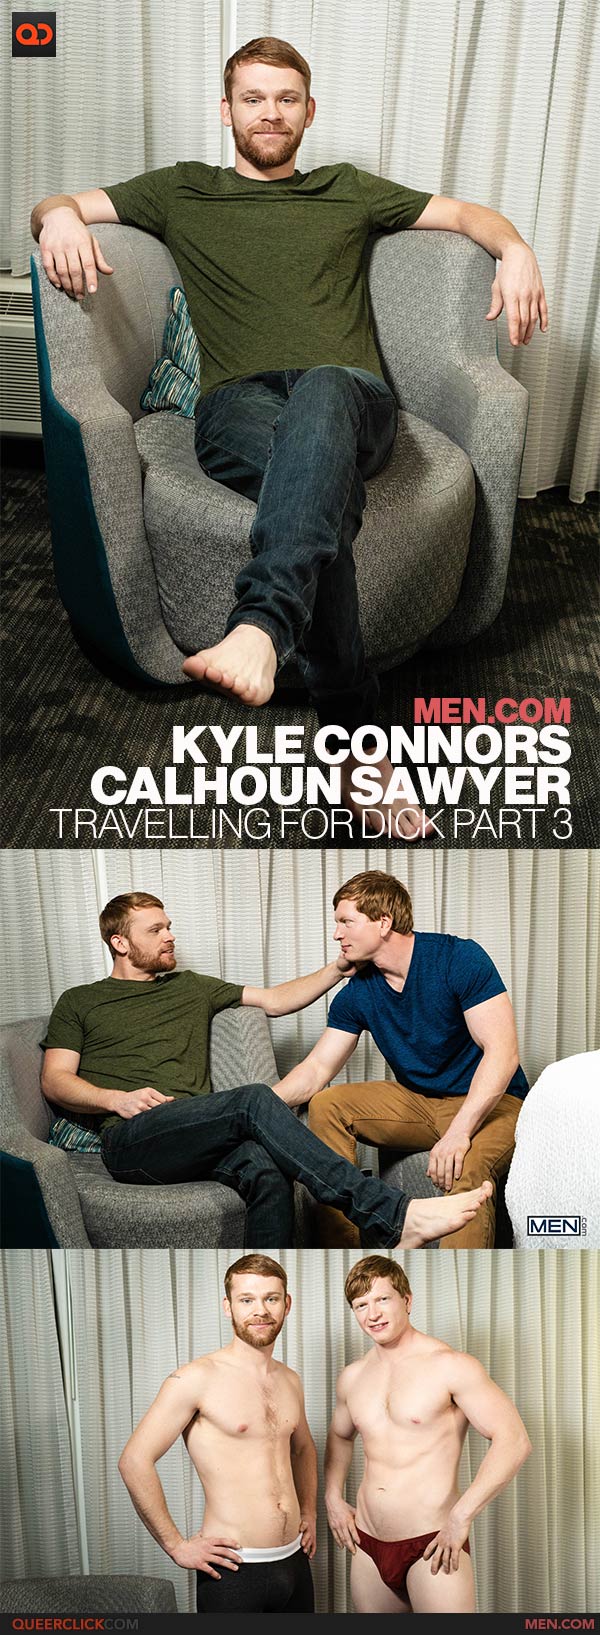 Men.com: Kyle Connors and Calhoun Sawyer